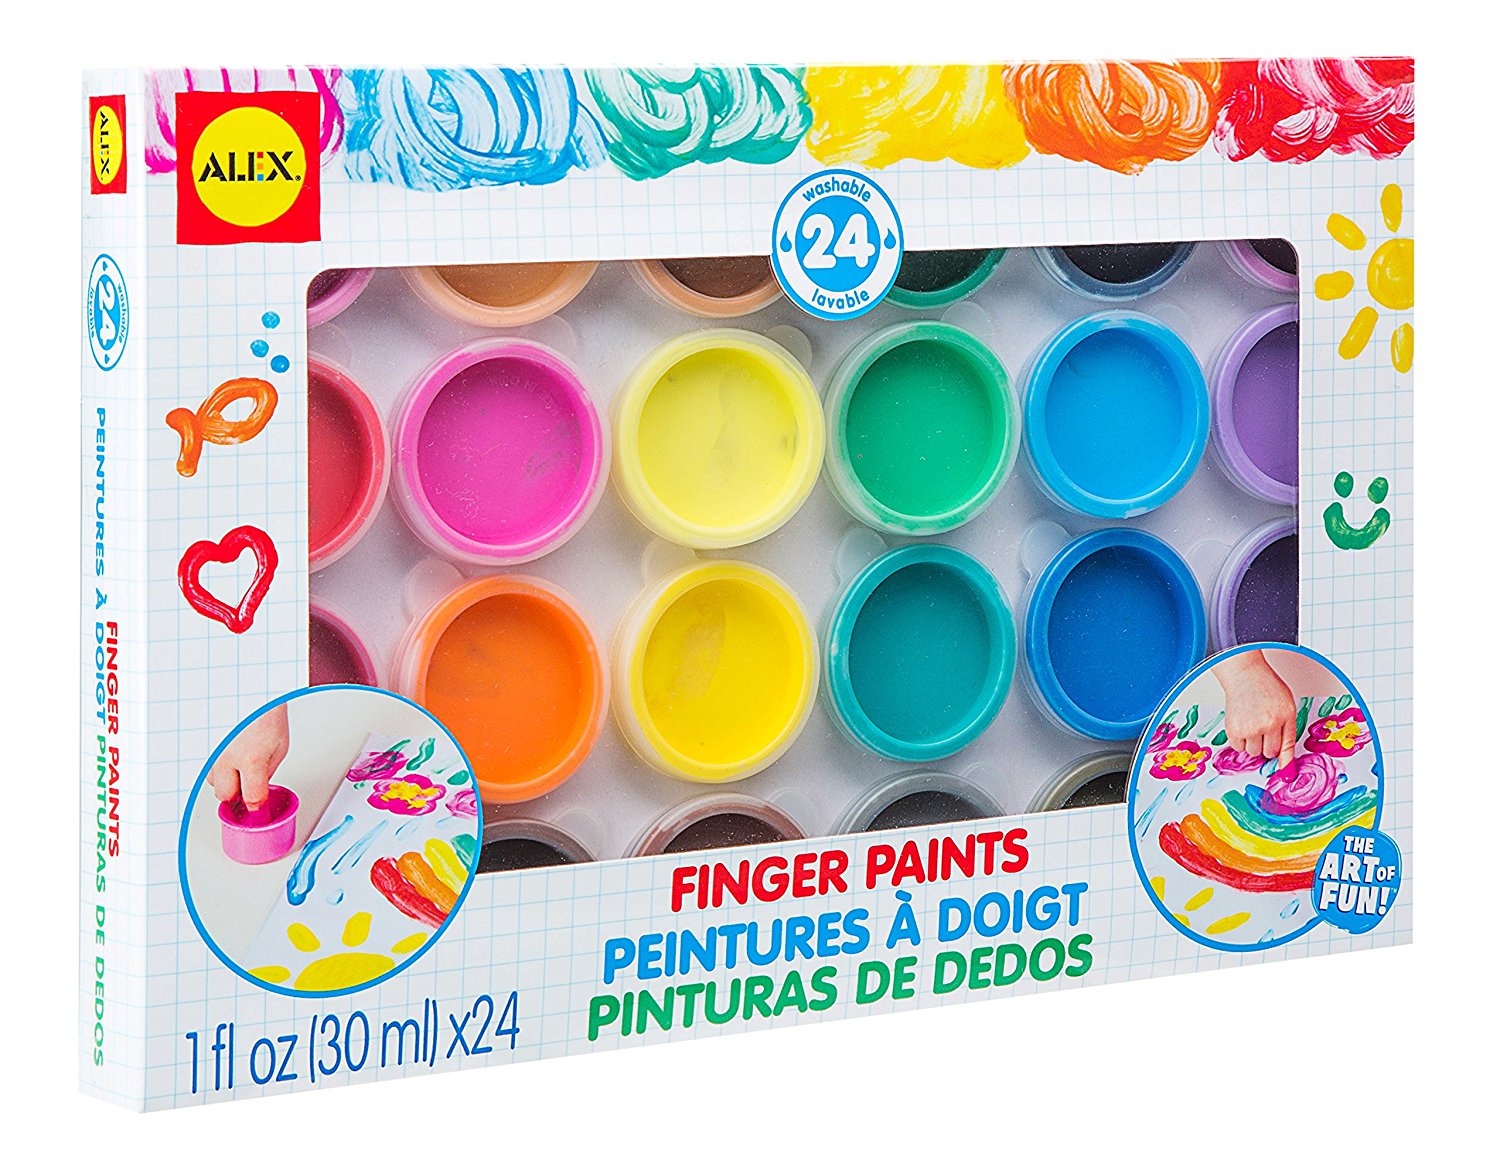 ALEX Toys Artist Studio 24 Finger Paints – Just $15.93!